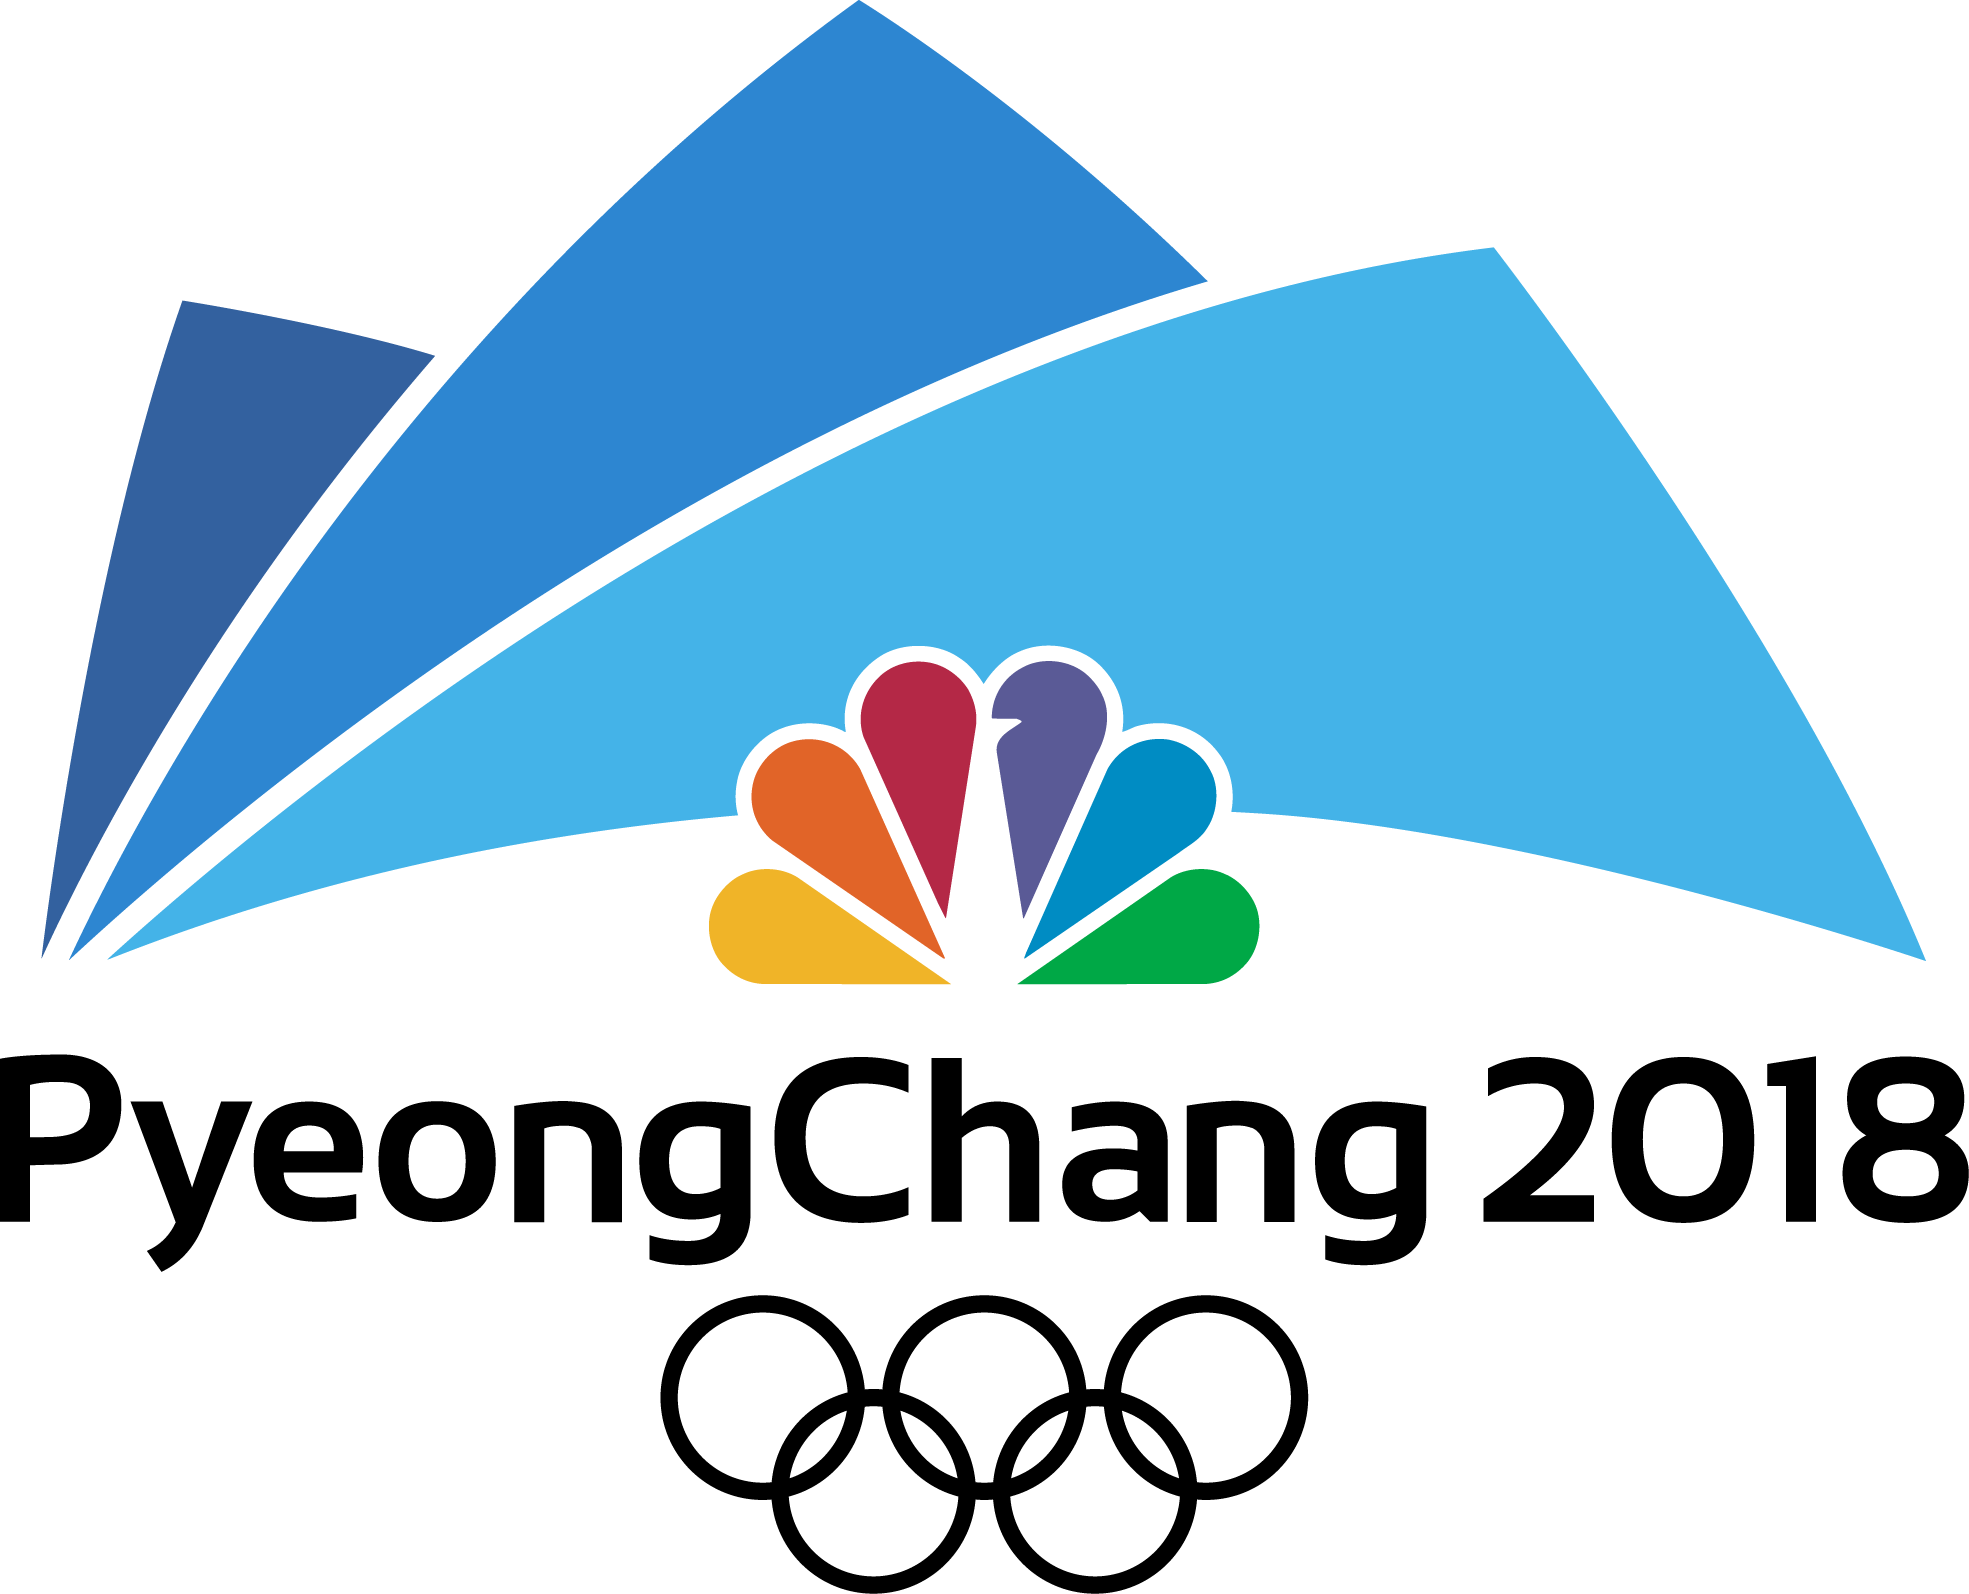 PyeongChang 2018 Olimpiyatları logosu şeffaf